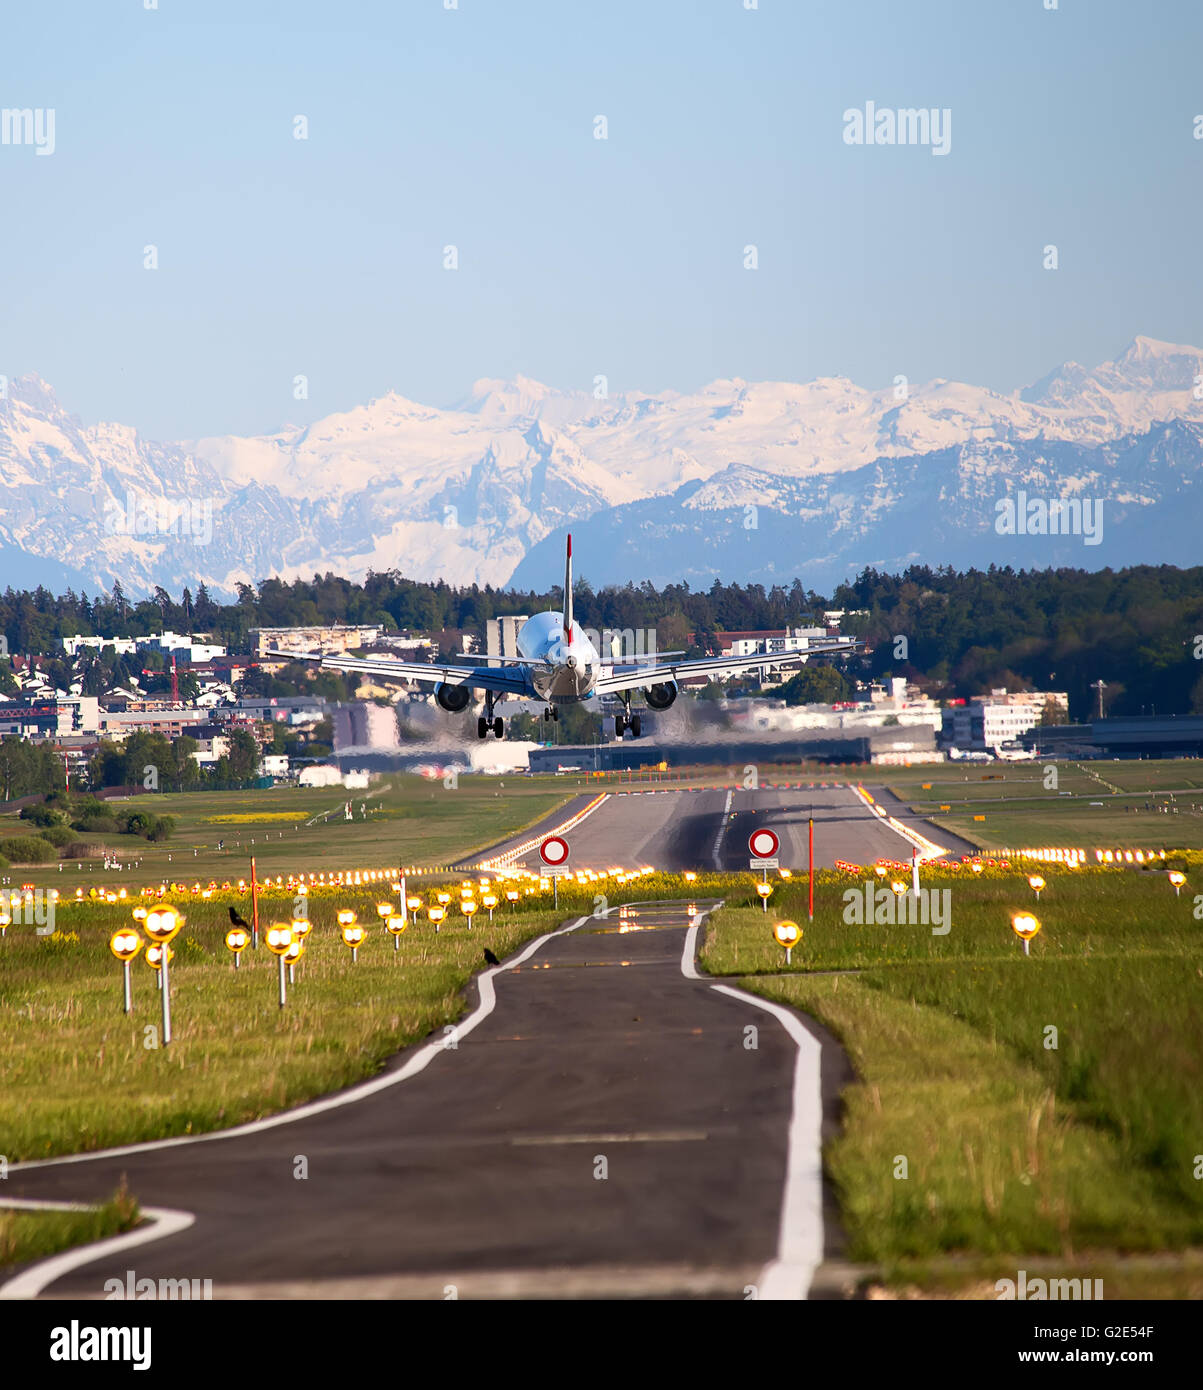 ZURICH - MAY 5: Austrian airlines A-320 landing in Zurich airport after short haul flight on May 5, 2016 in Zurich, Switzerland. Stock Photo